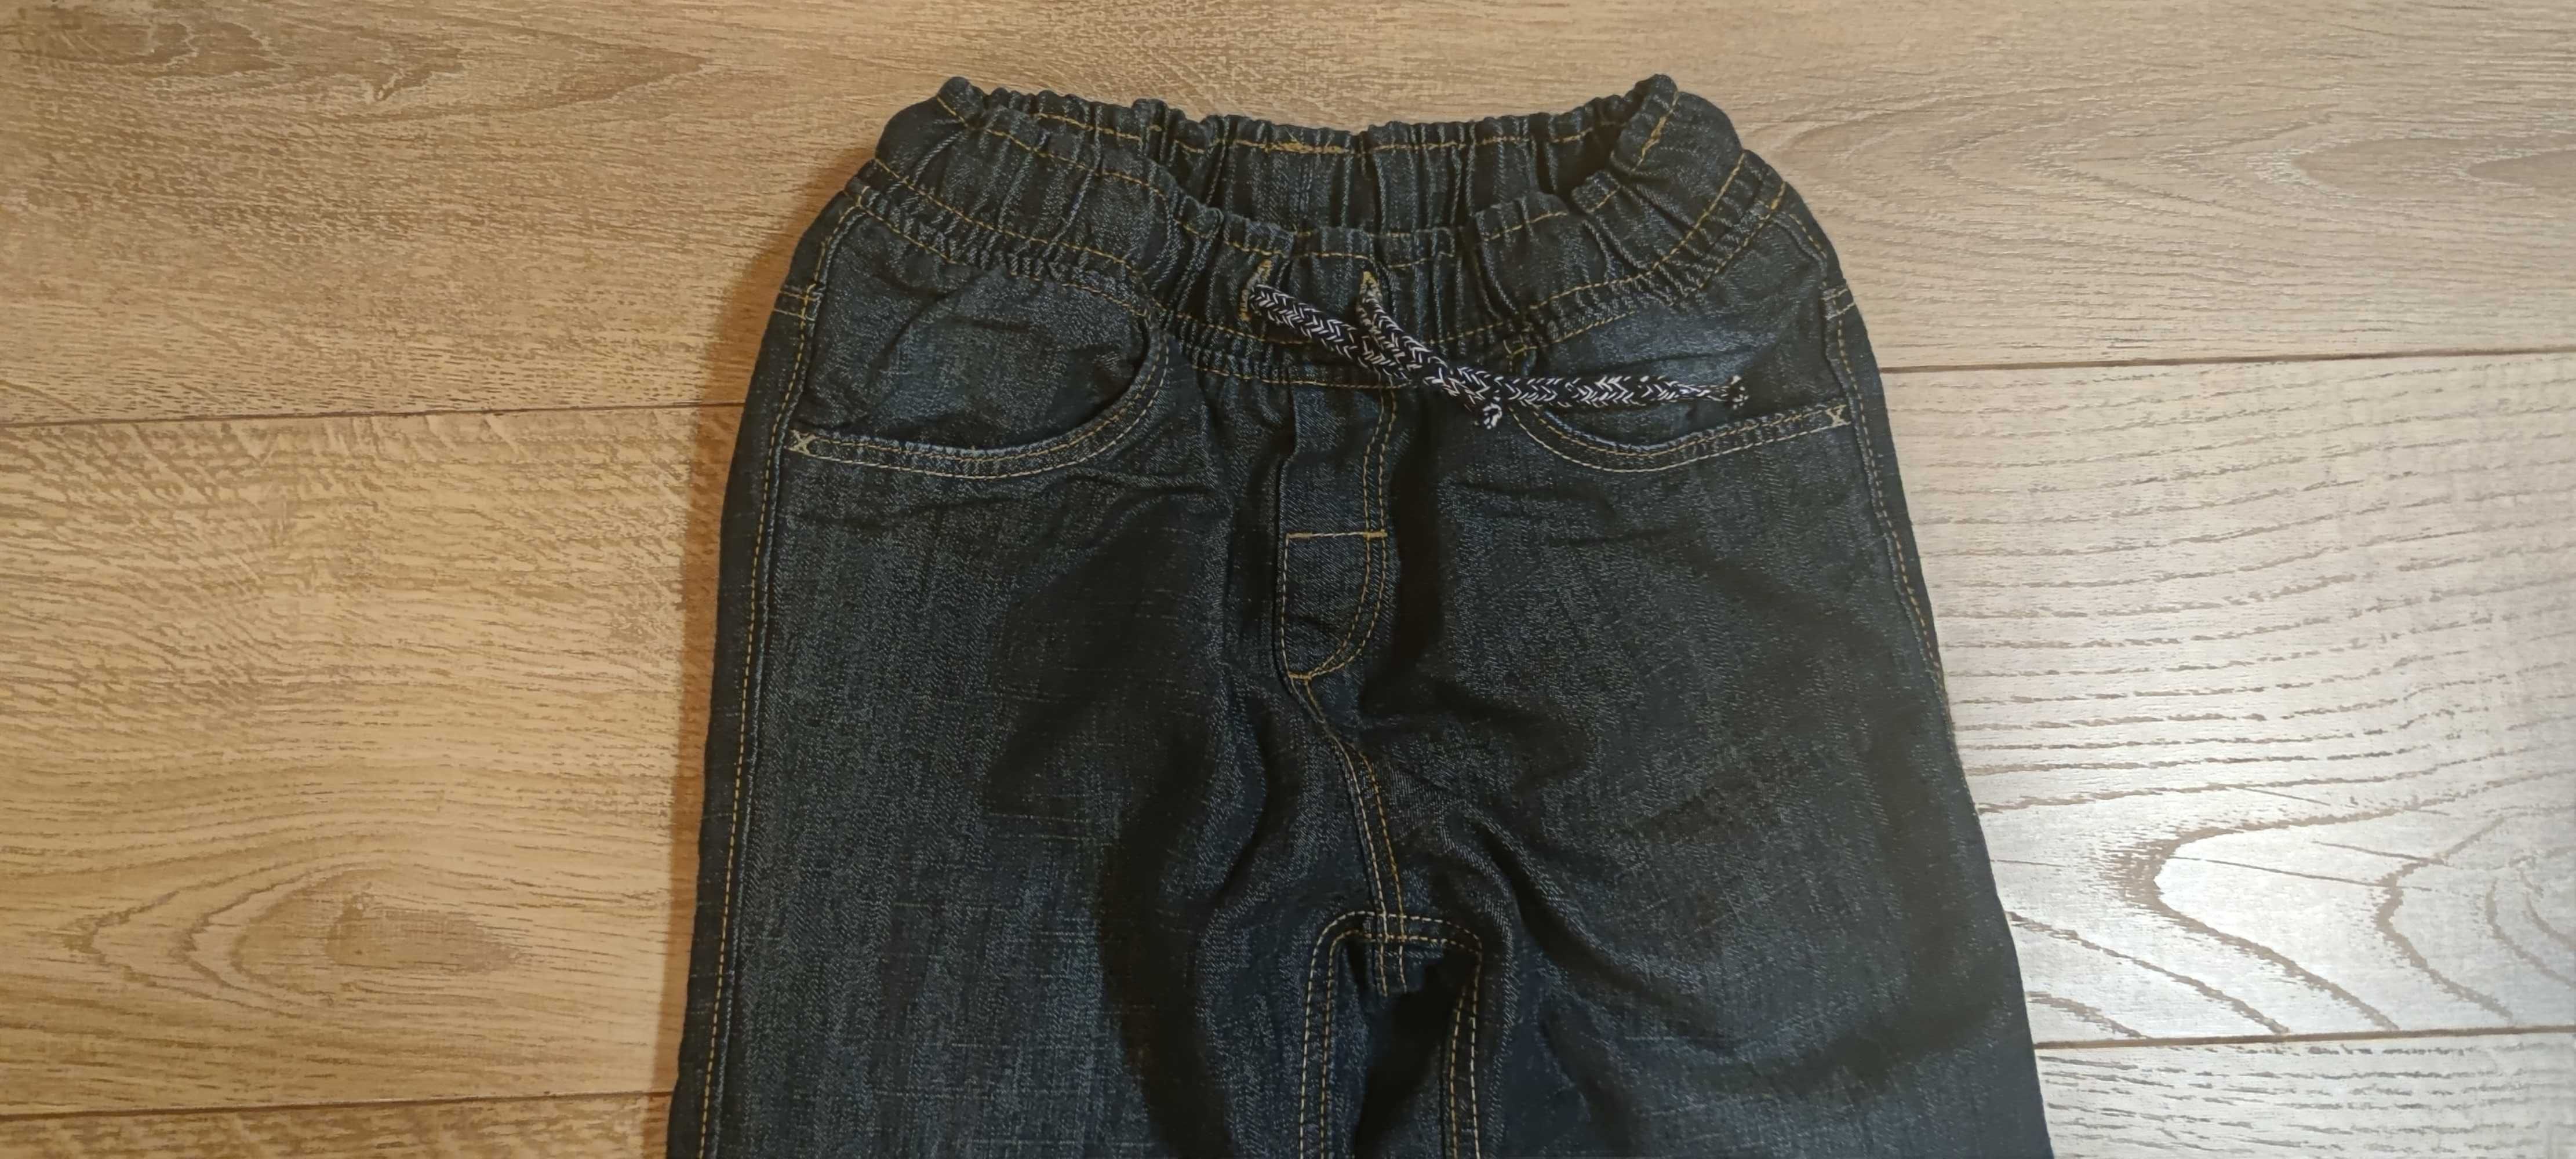 Jak nowe 134 C&A spodnie ocieplane jeans dla chłopca